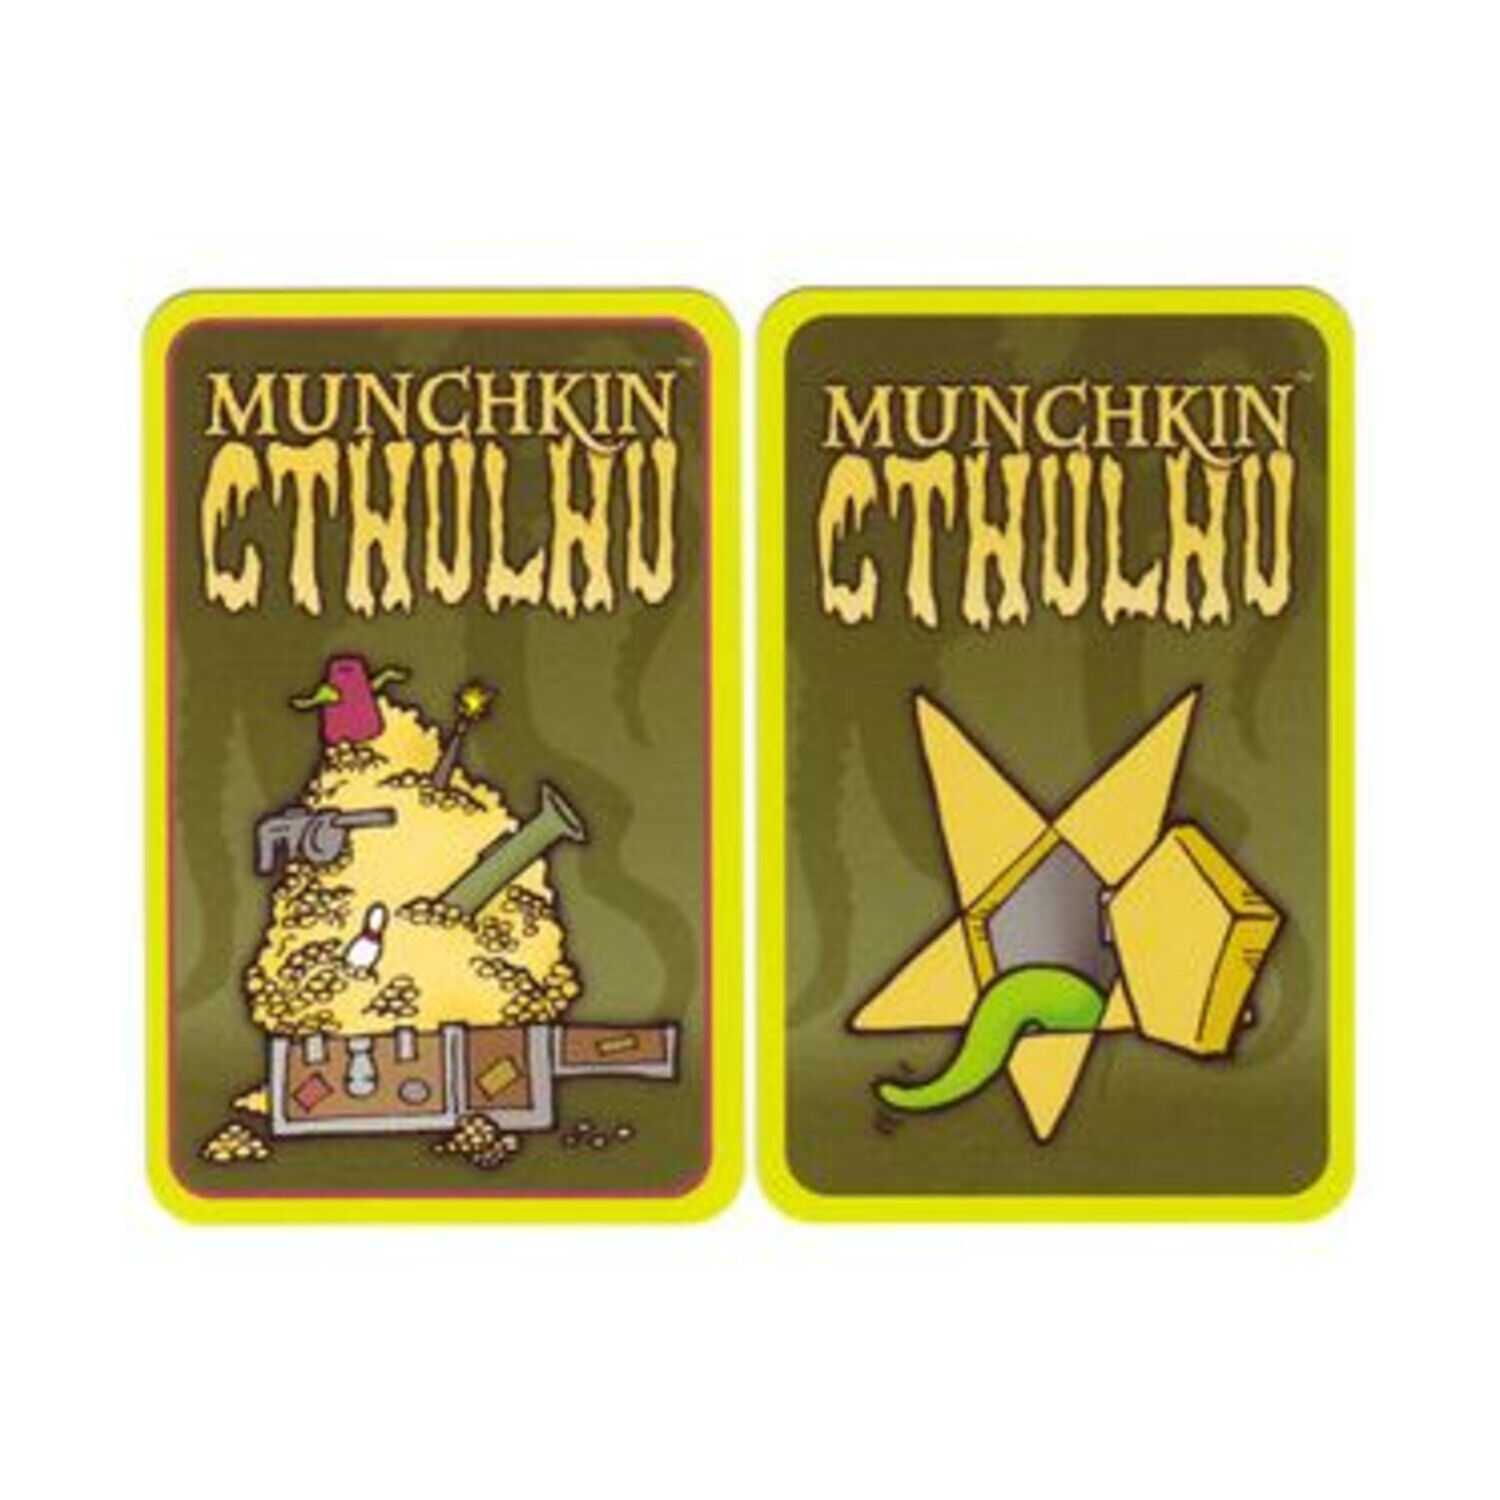 SJG Munchkin Munchkin Cthulhu Blank Cards New